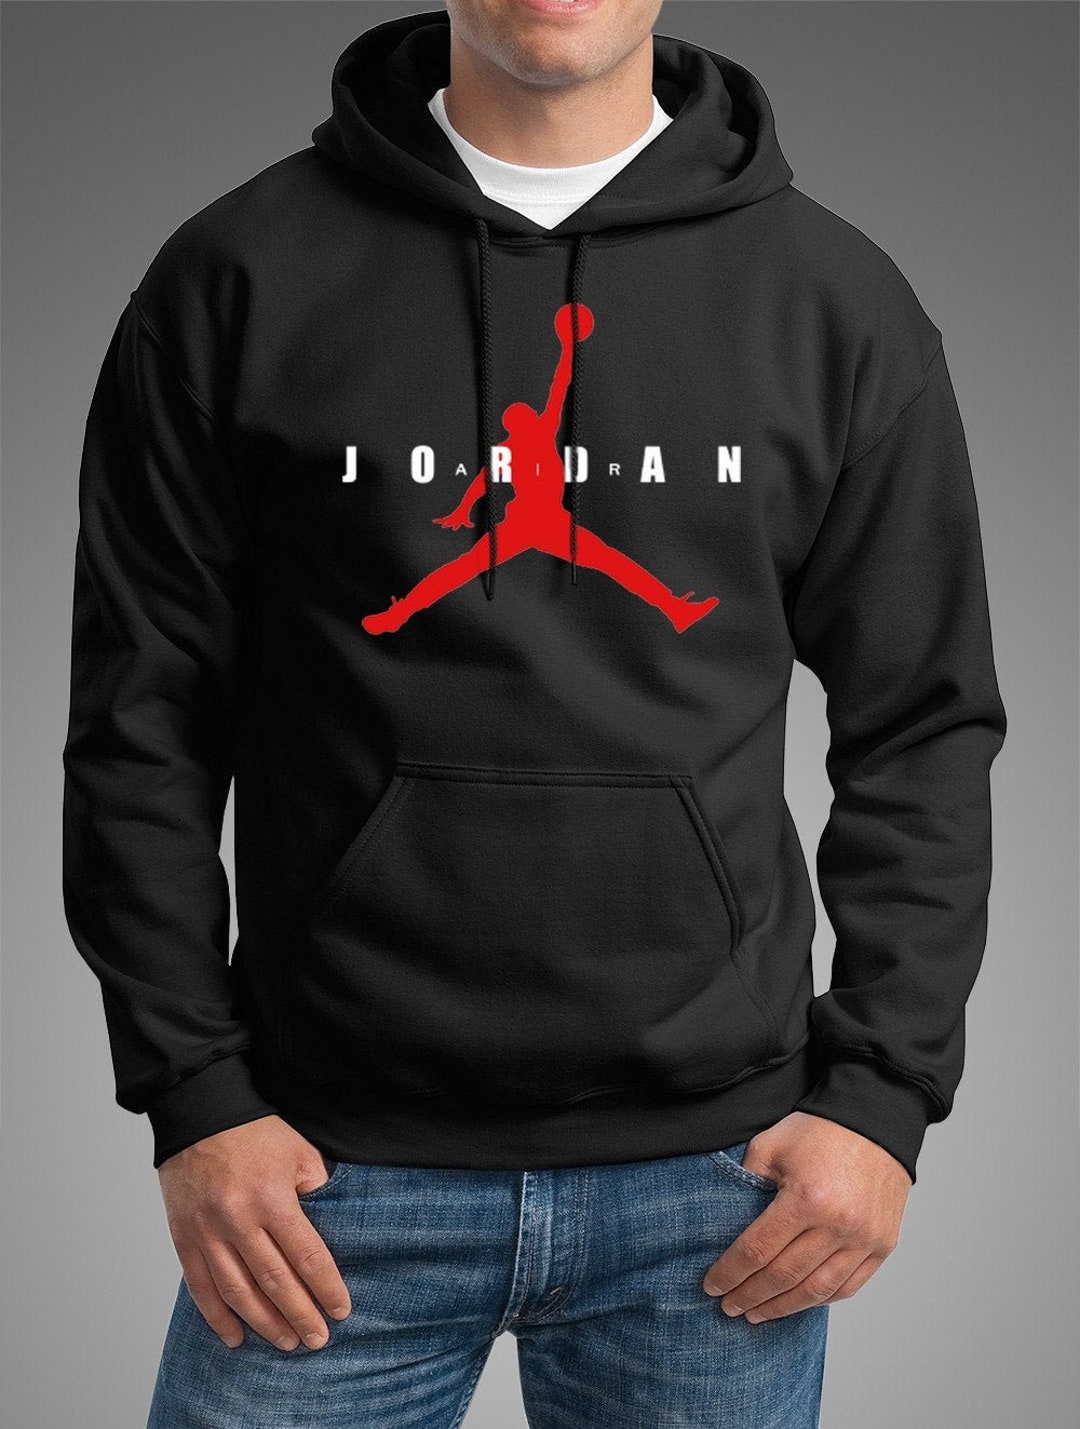 black and grey jordan hoodie